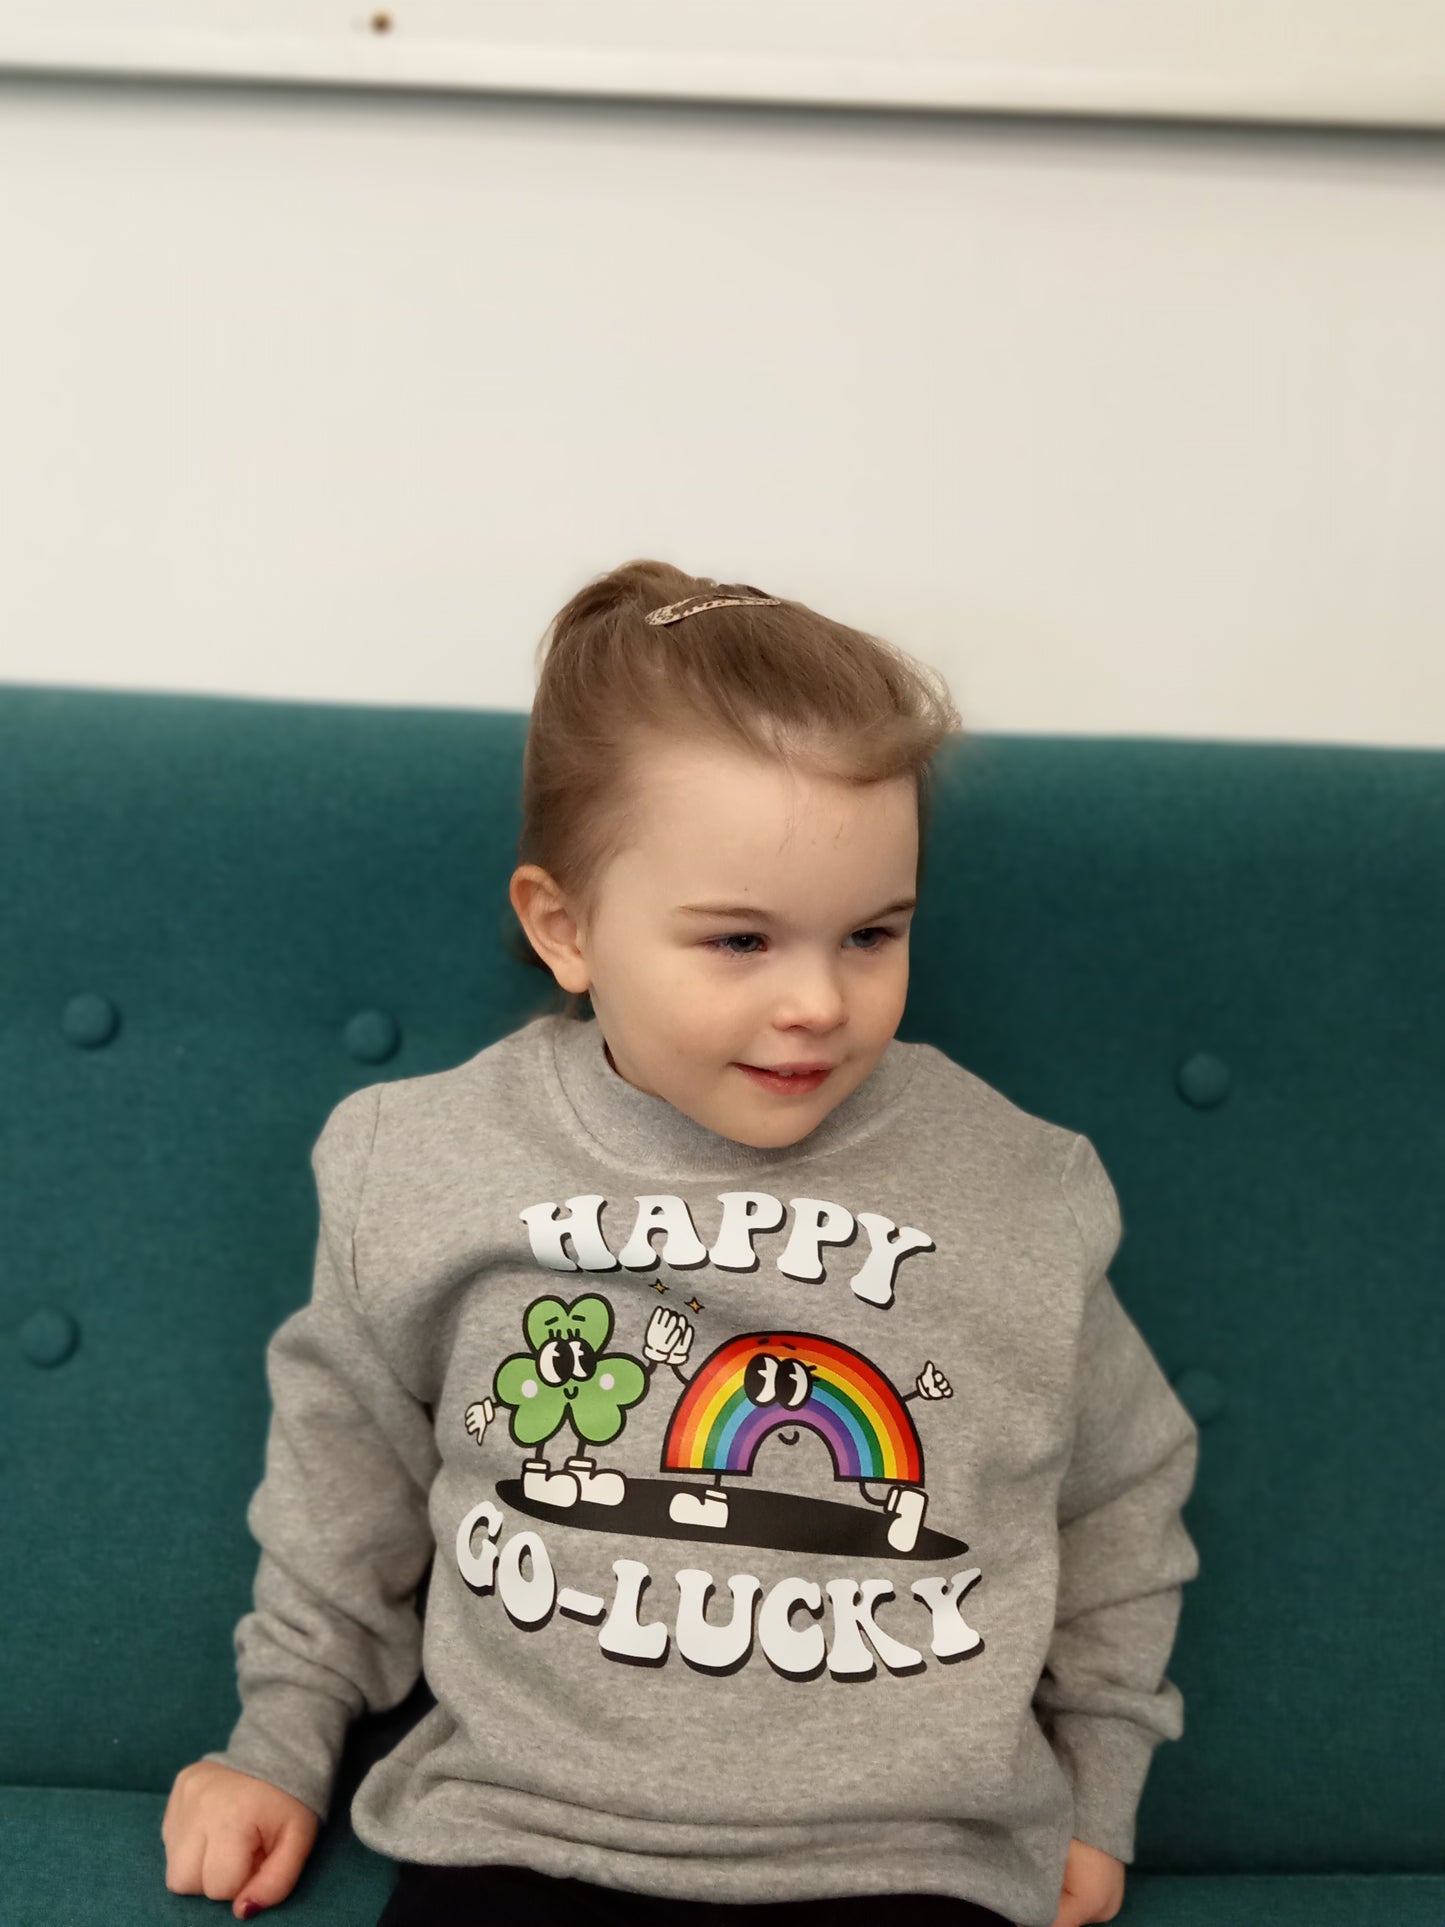 Happy Go-Lucky Sweater